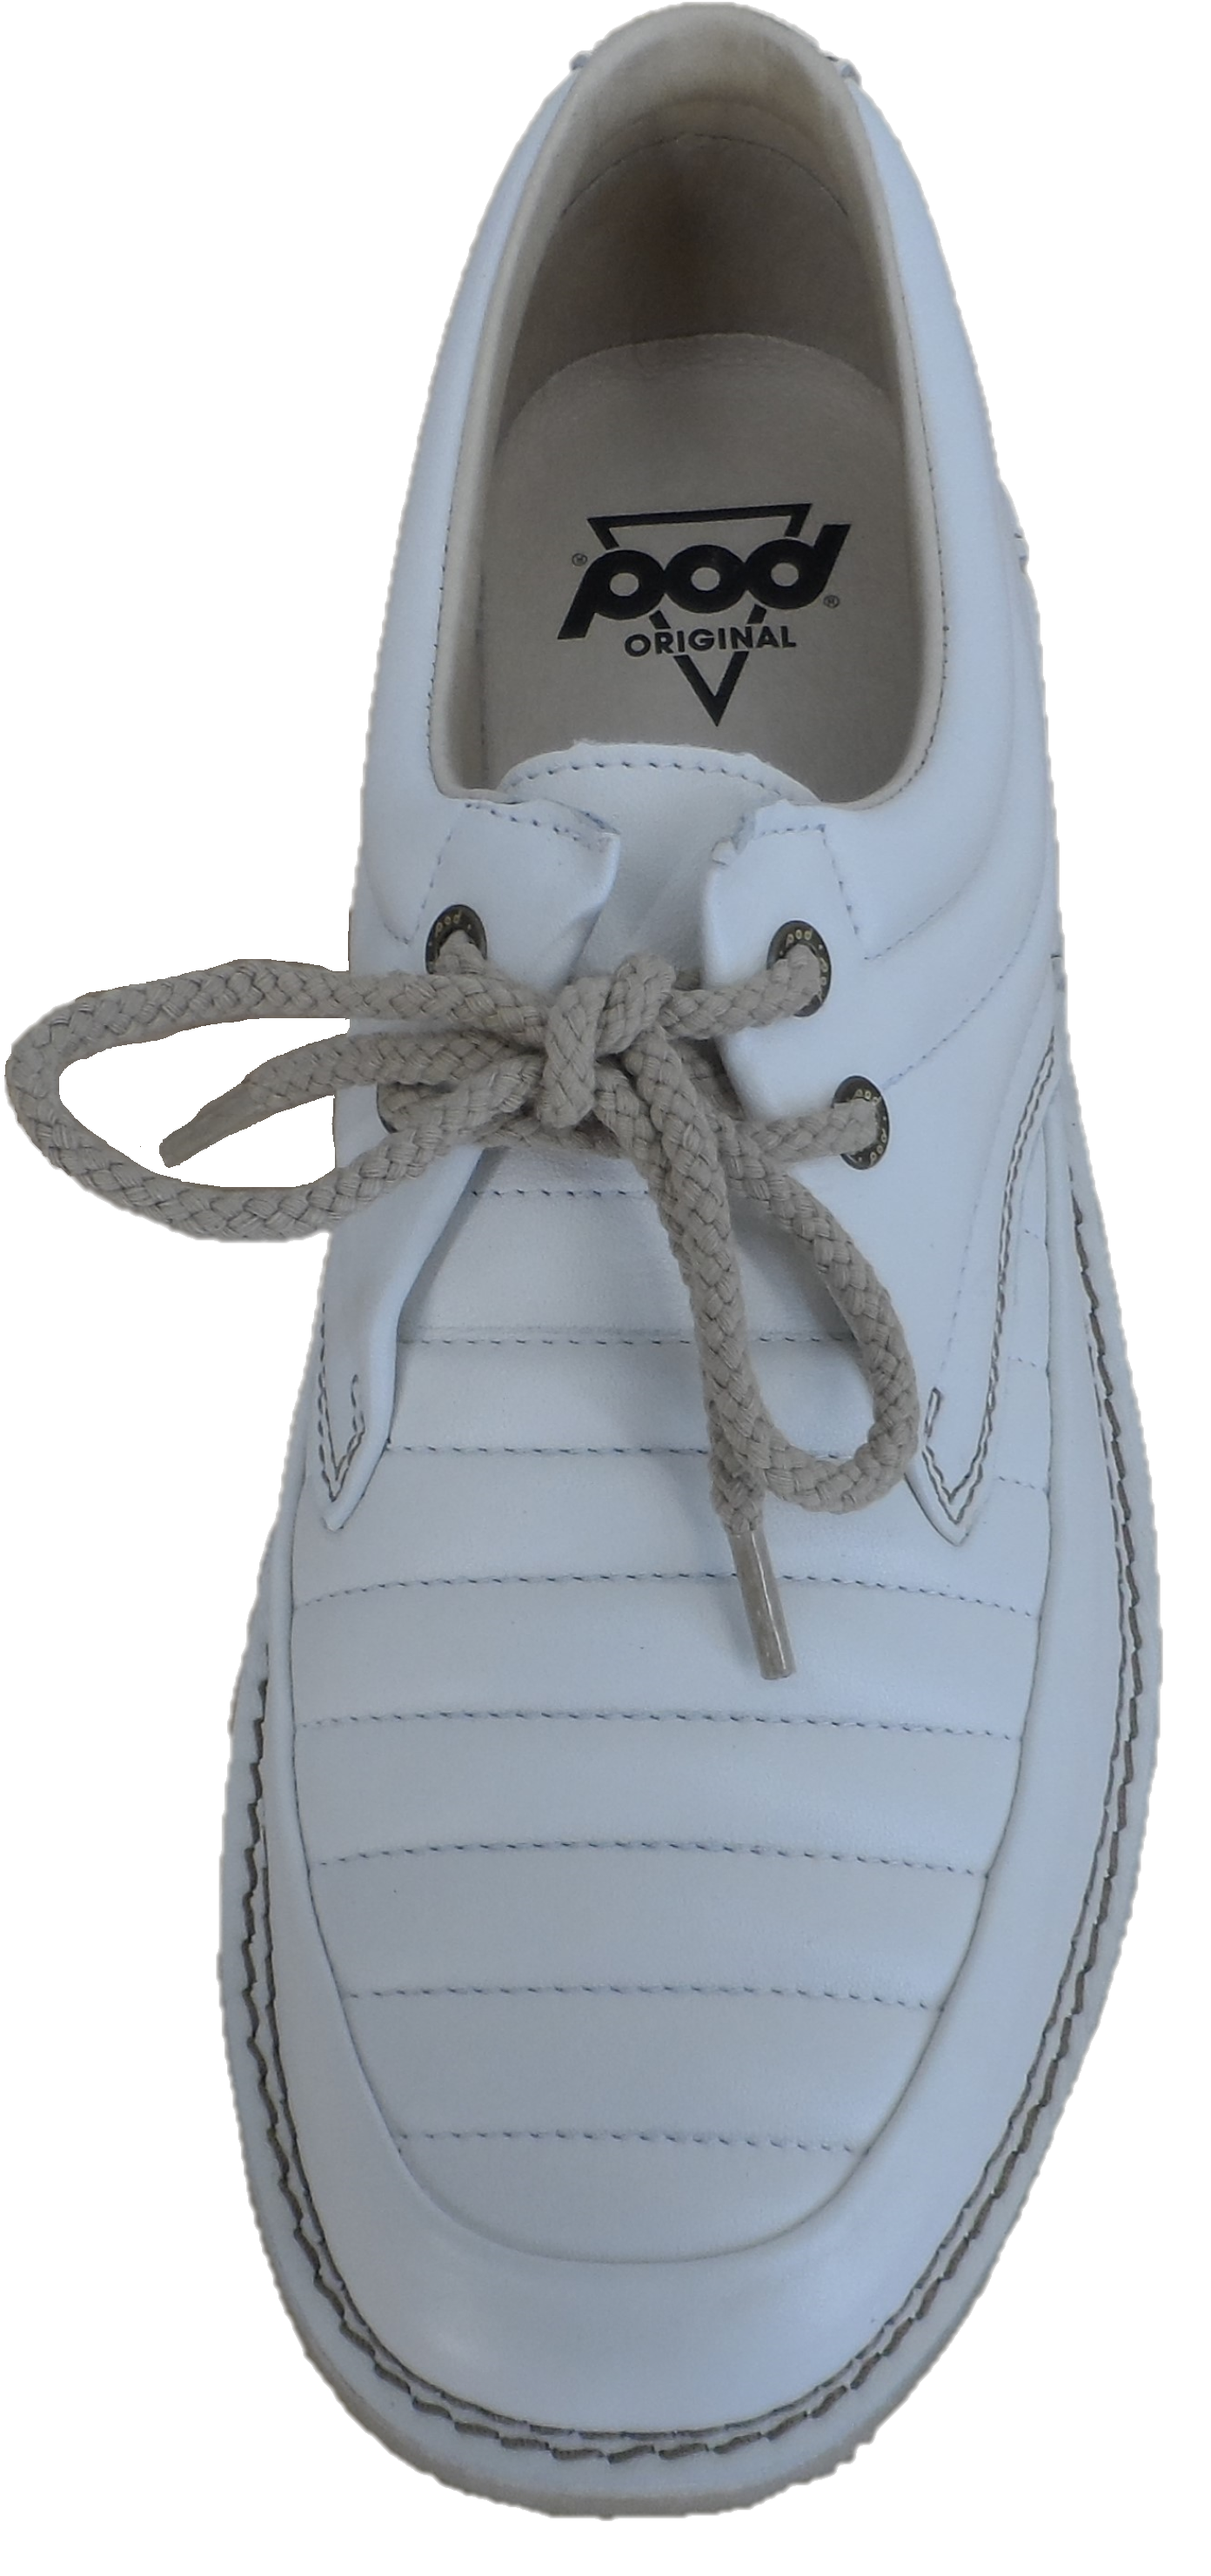 Zapatos Pod Original jagger blancos retro mod de cuero